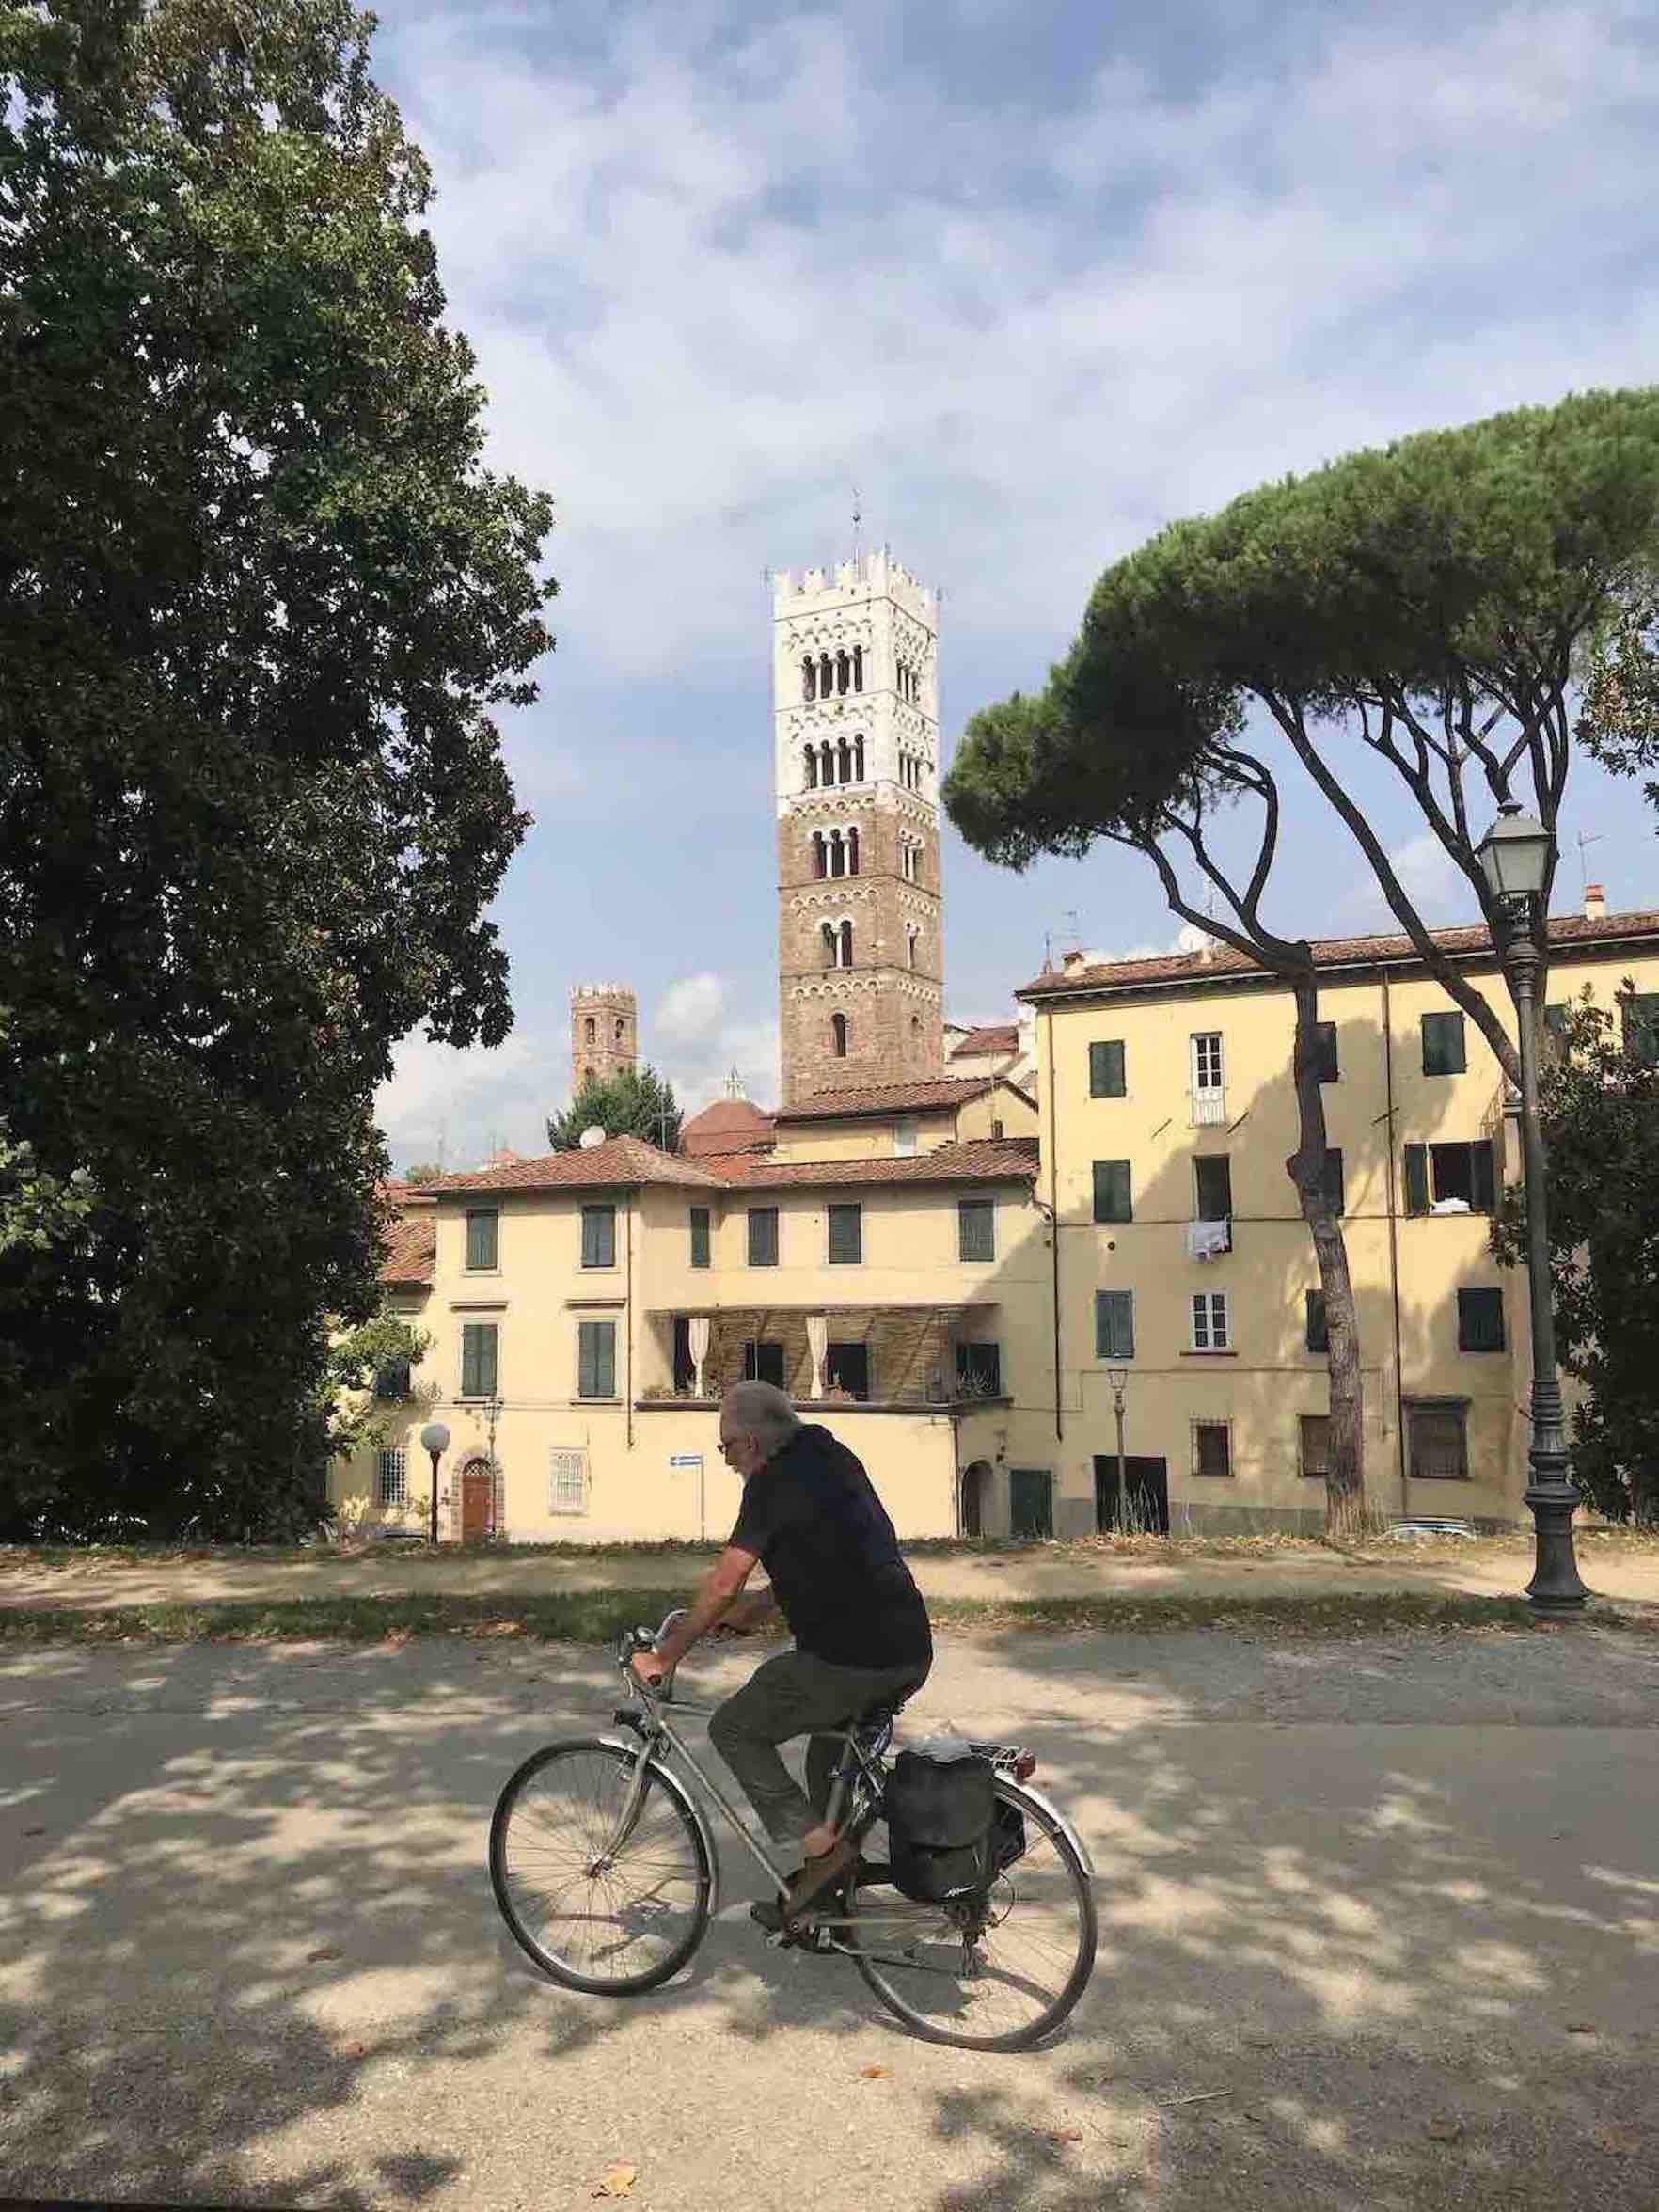 ALMA DE VIAJE - Italia - Lucca 2019  - 7300.jpeg